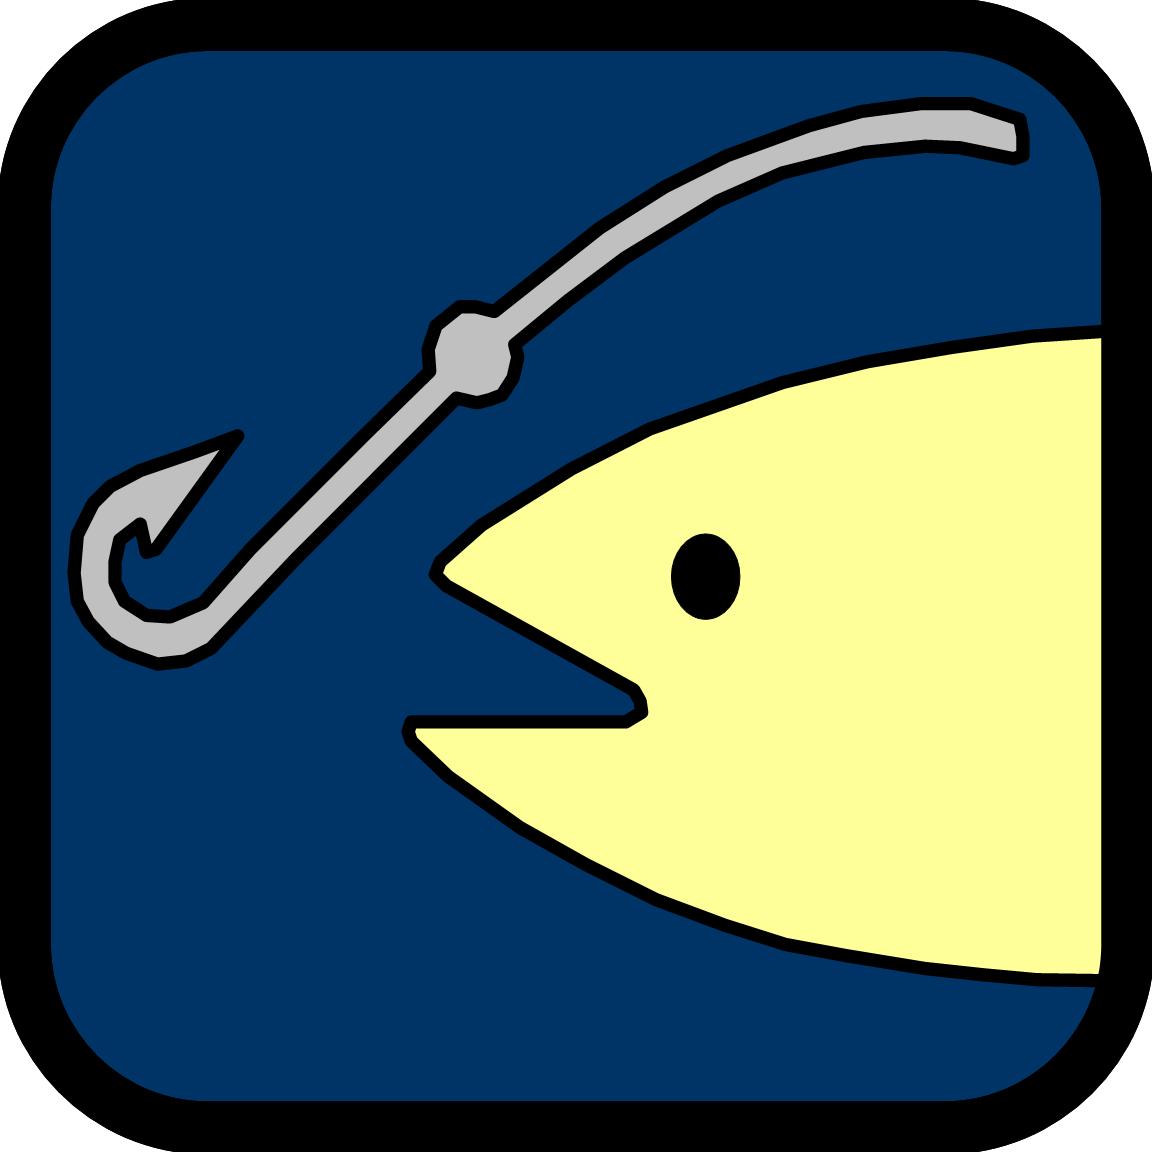 a fish icon